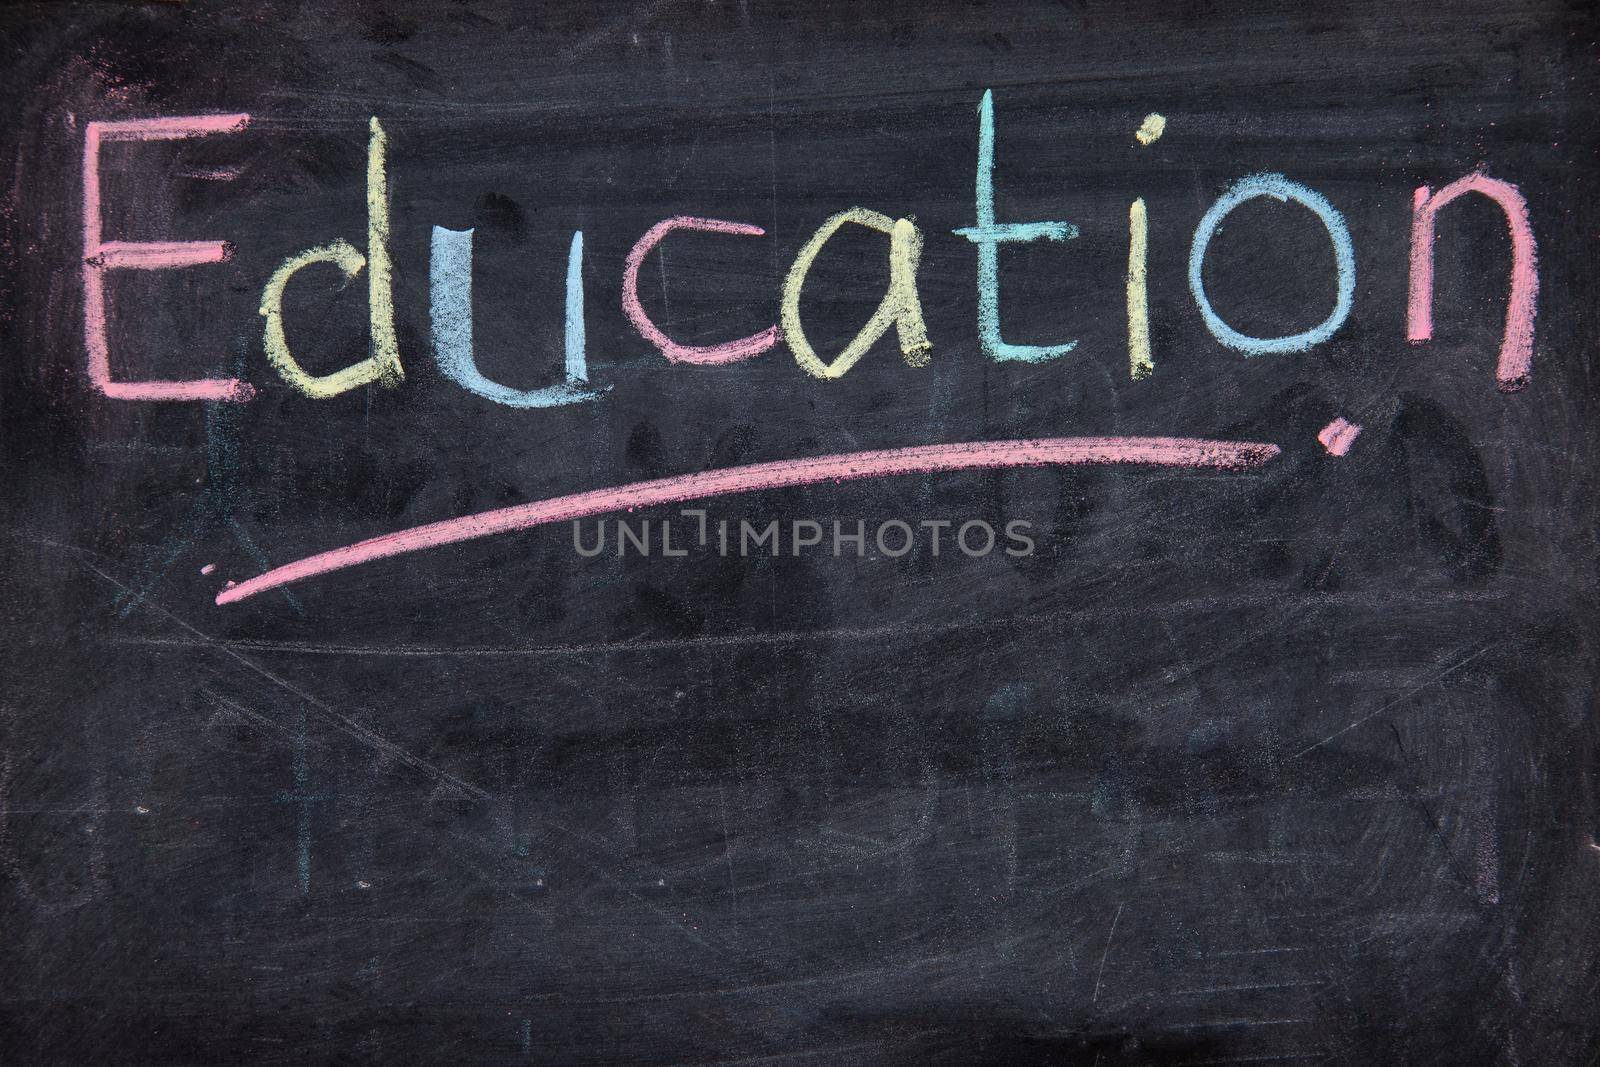 The word Education written on blackboard. Education Conceptual